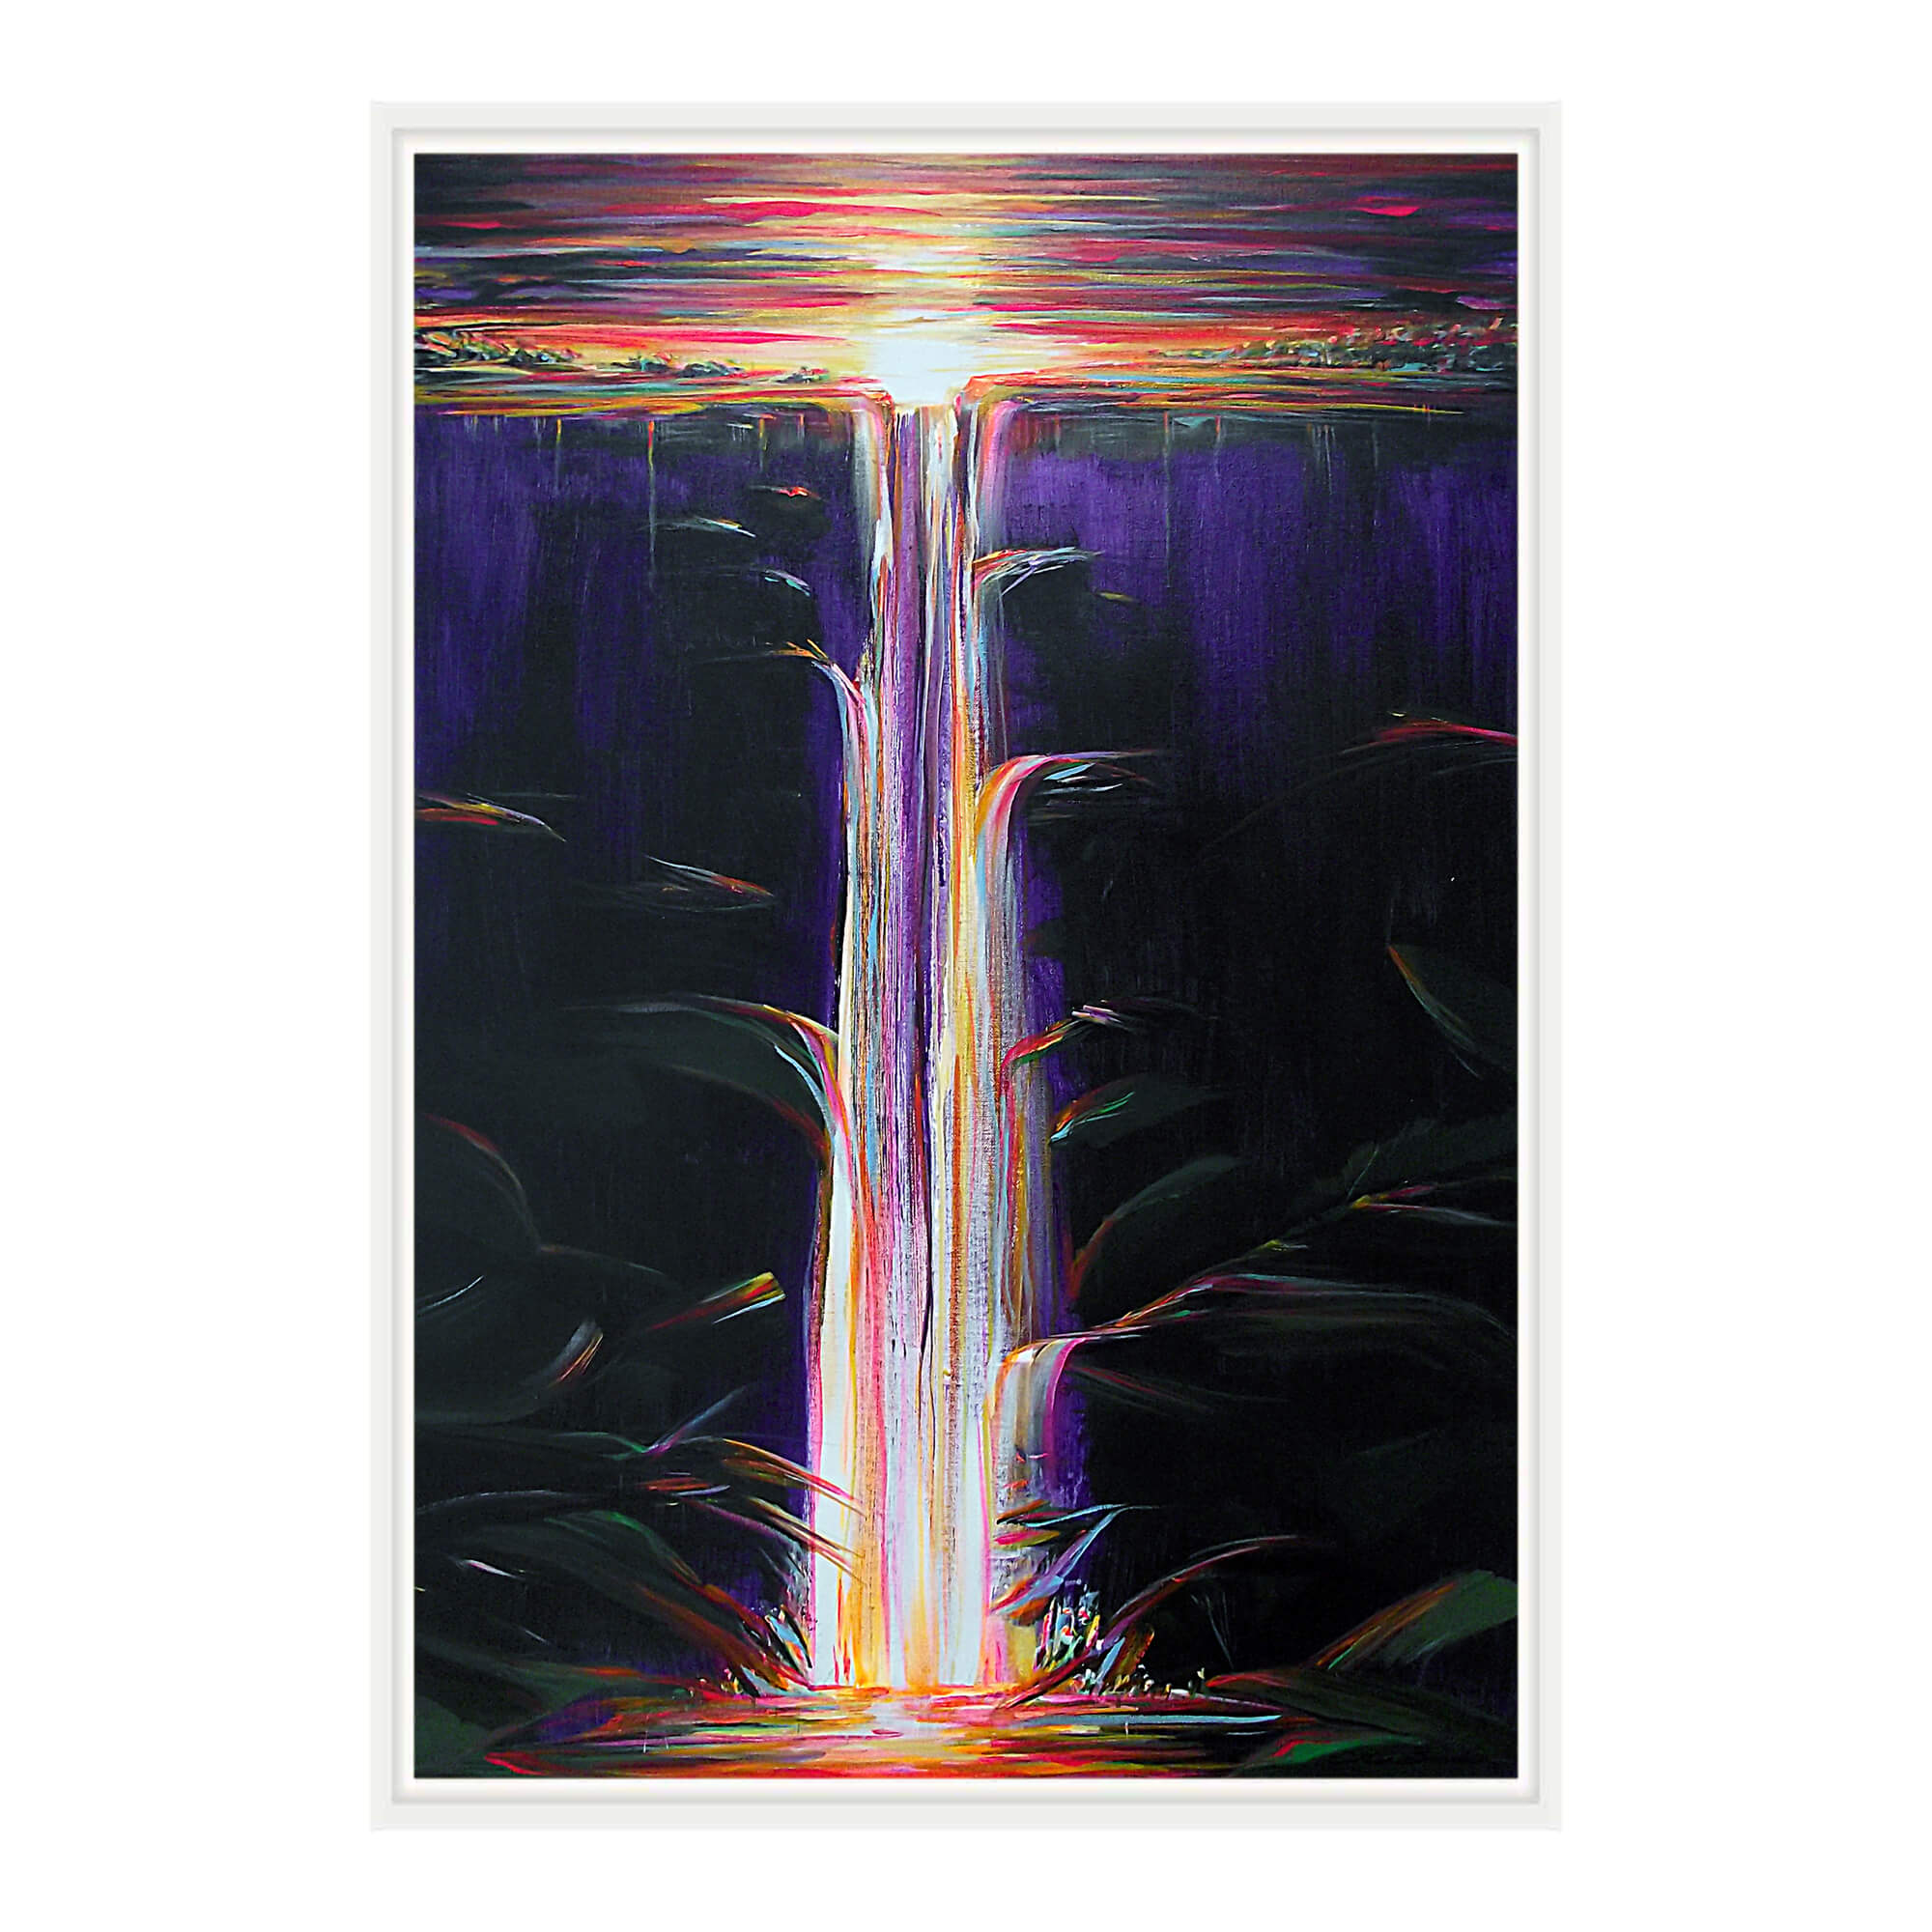 A black and purple-hued waterfall by Hawaii artist Jess Burda